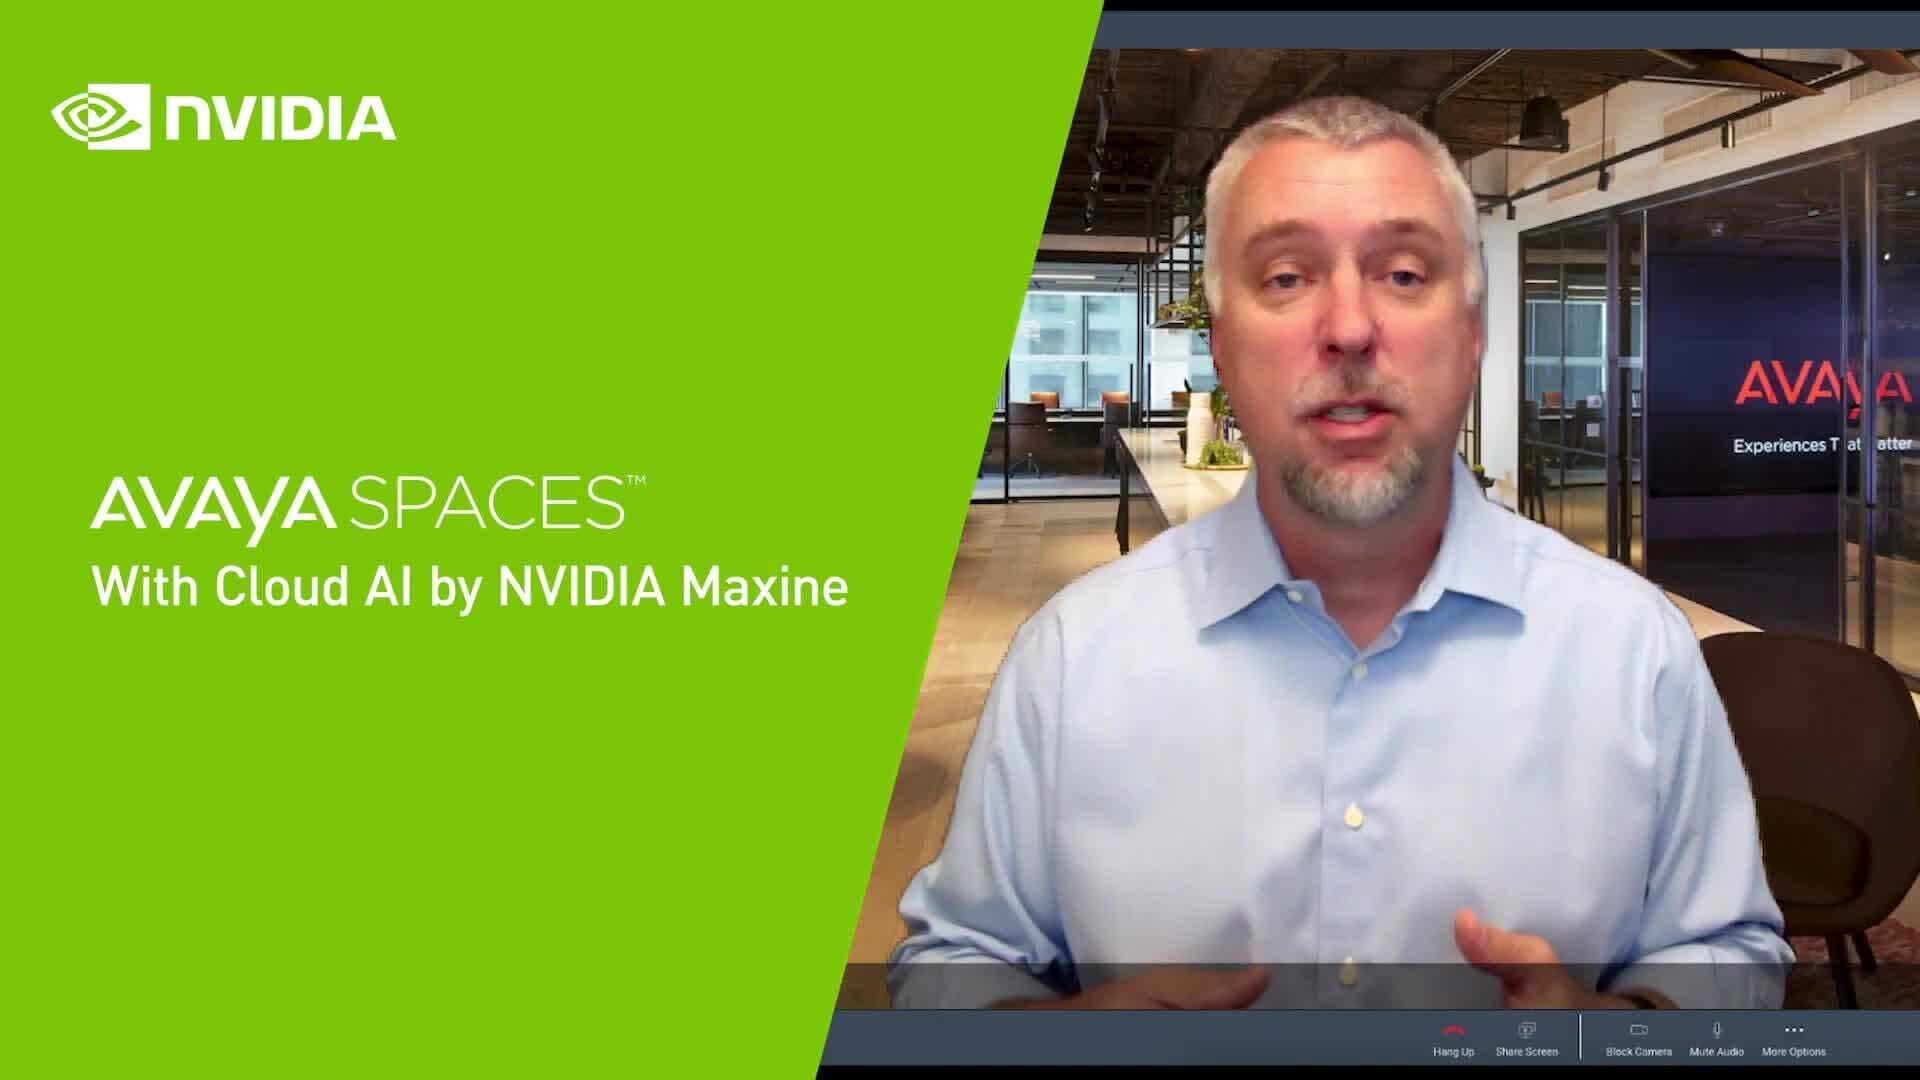 O Avaya Spaces junto com a NVIDIA Artificial Intelligence possibilita melhores Experiências